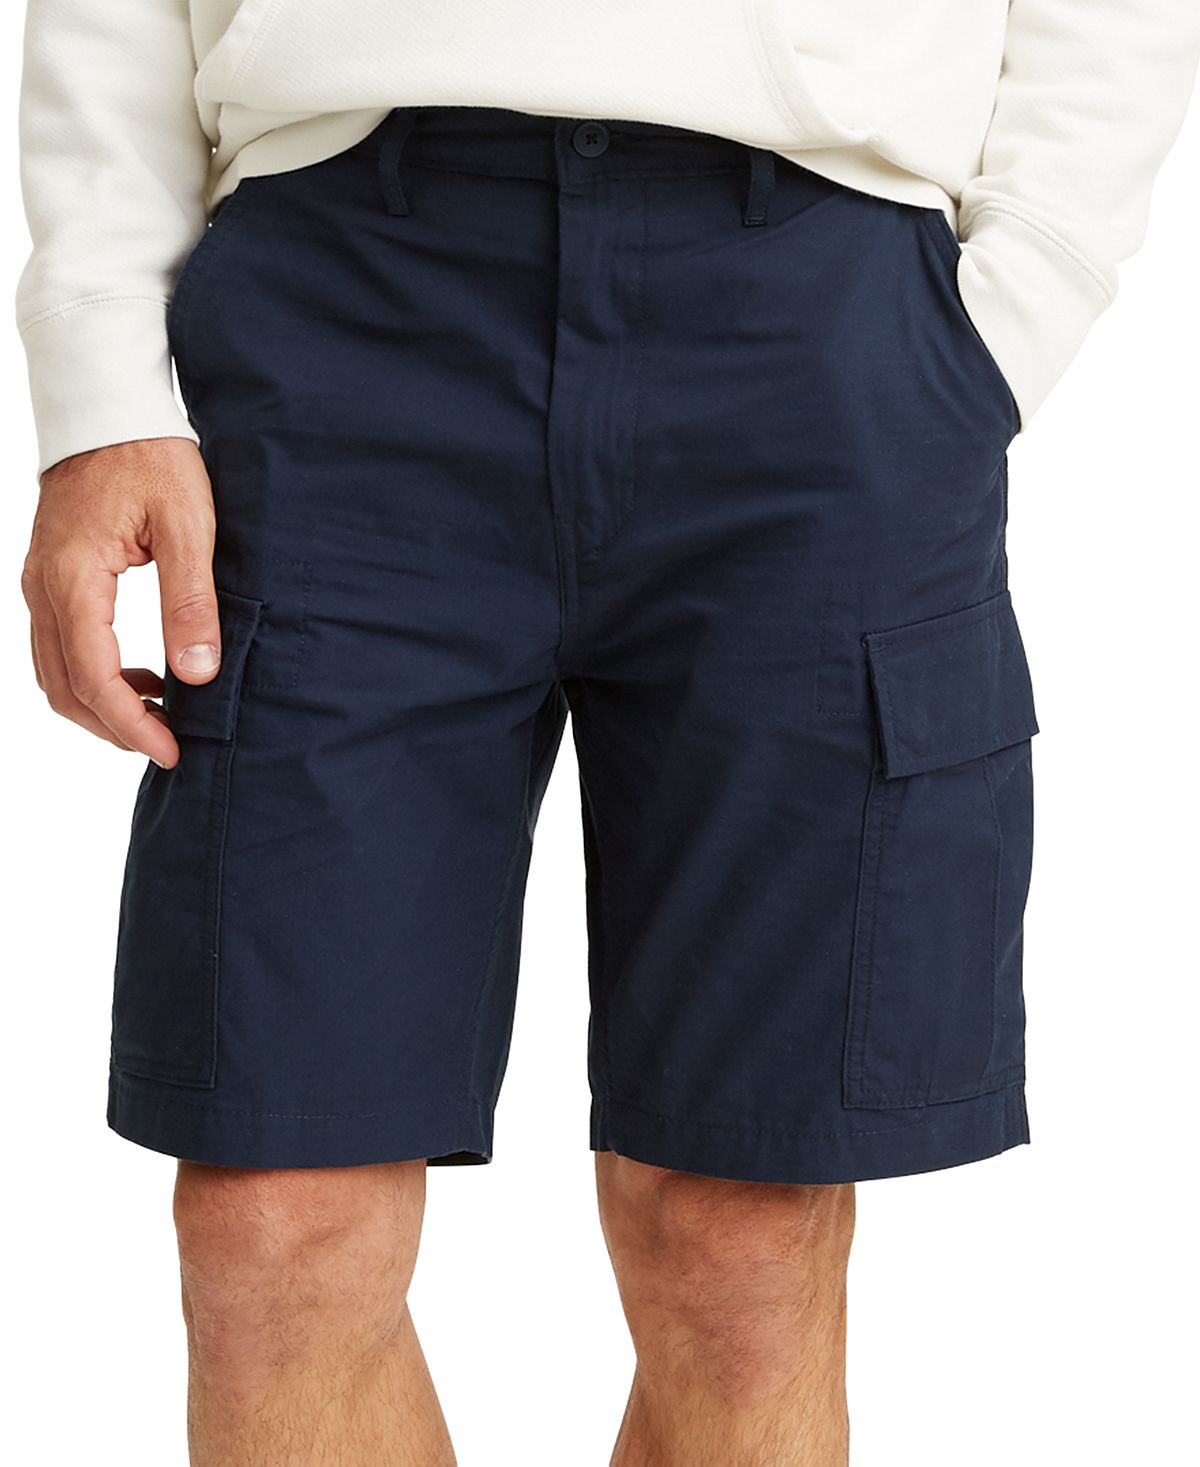 универсальные брюки карго больших и высоких размеров dockers Мужские шорты-карго свободного покроя больших и высоких размеров Levi's